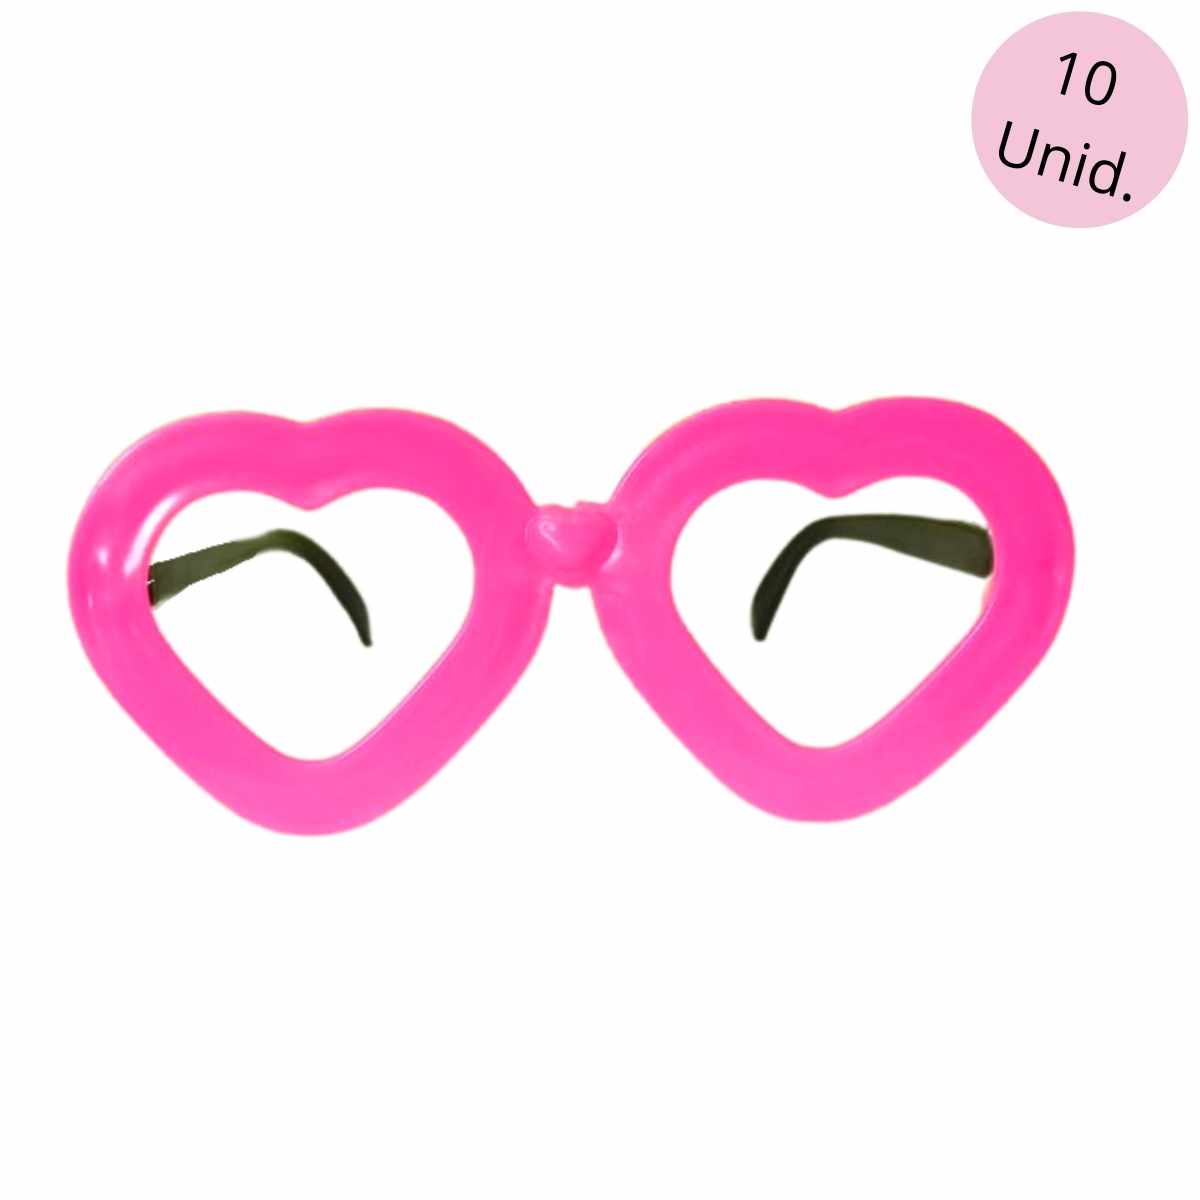 Oculos Coração sem Lente com 10